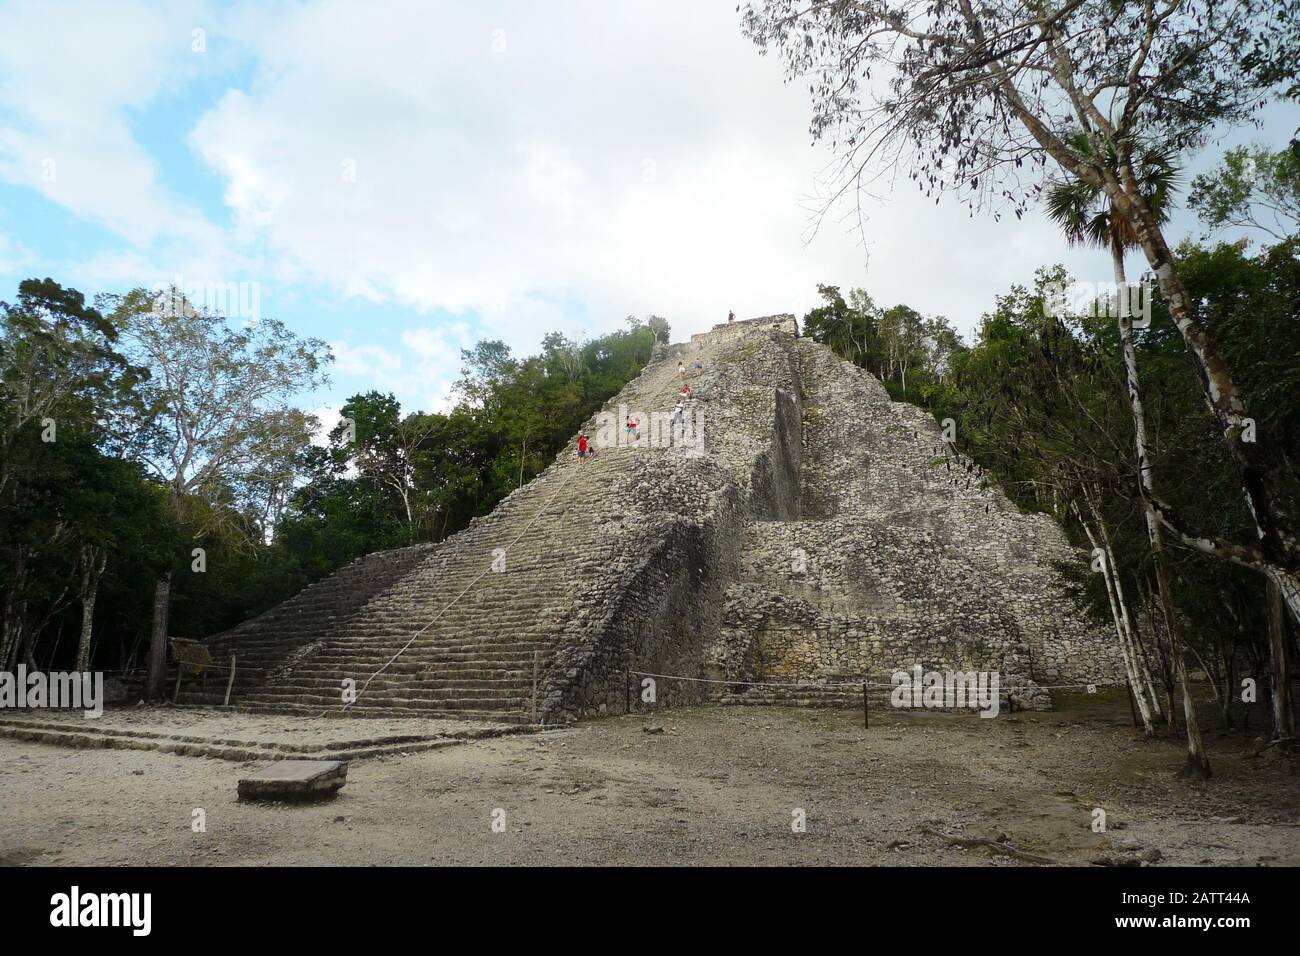 The ancient Mayan Ruins at Coba, Quintana Roo, Mexico. Stock Photo